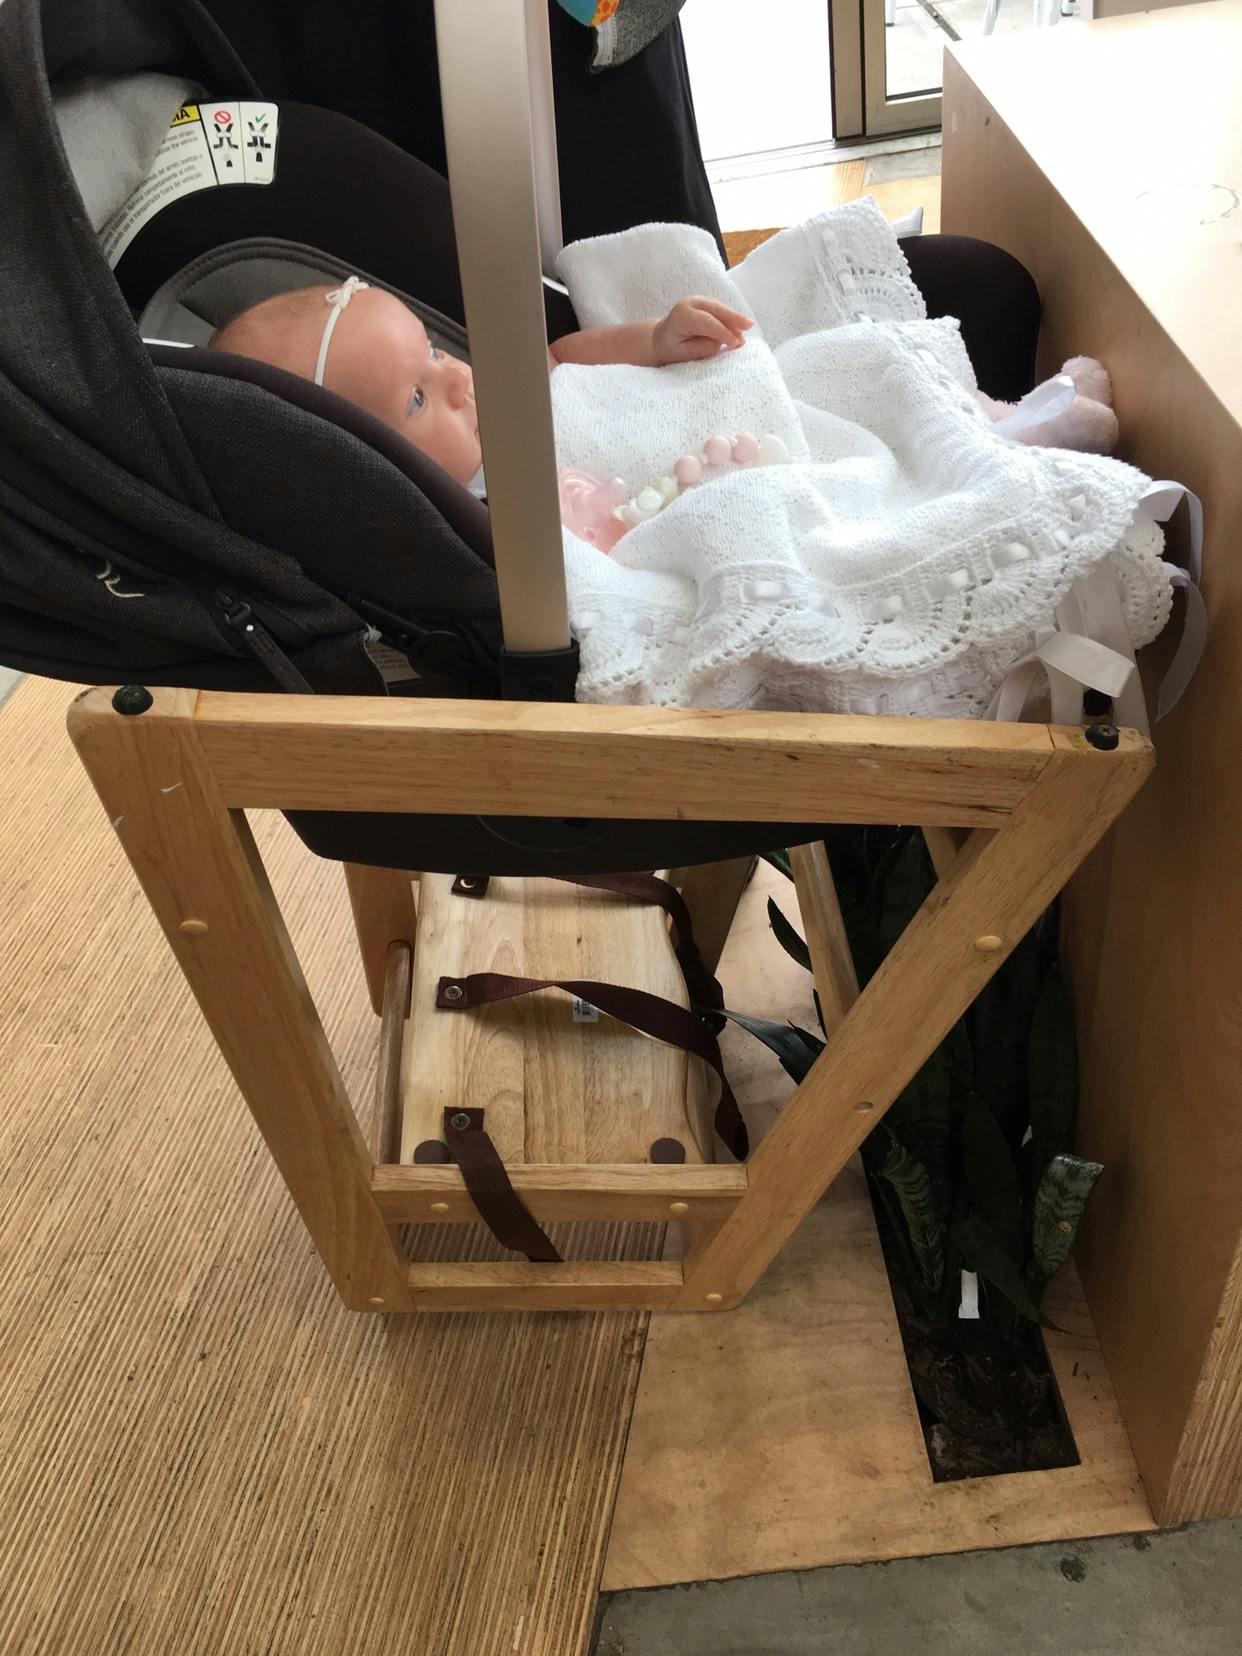 baby car seat high chair